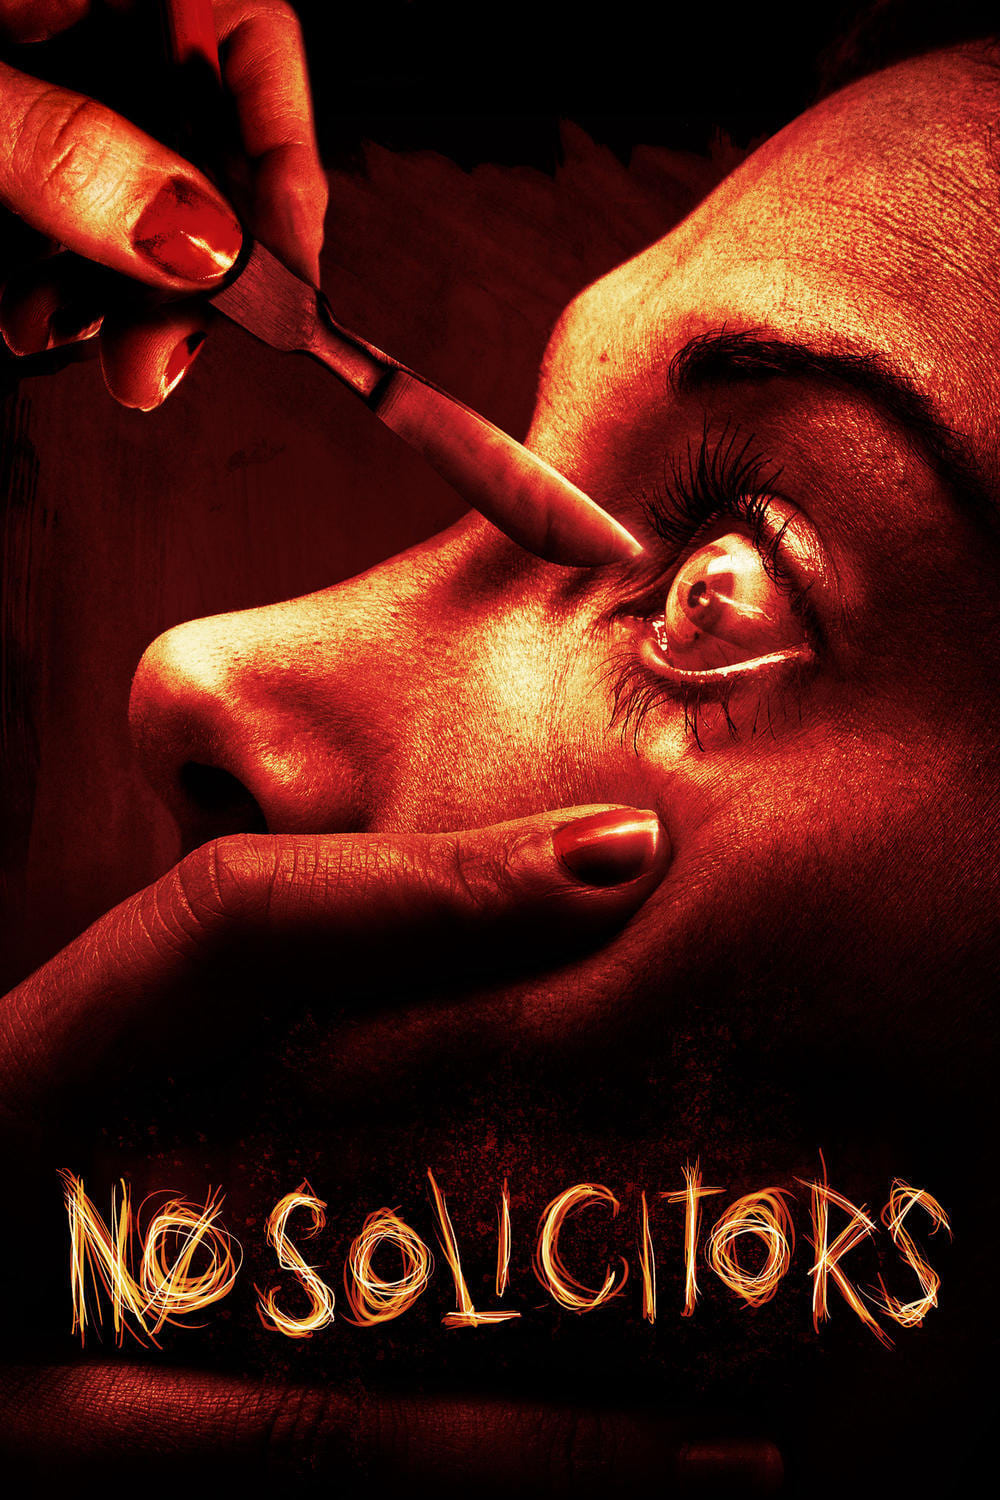 No Solicitors (2015)